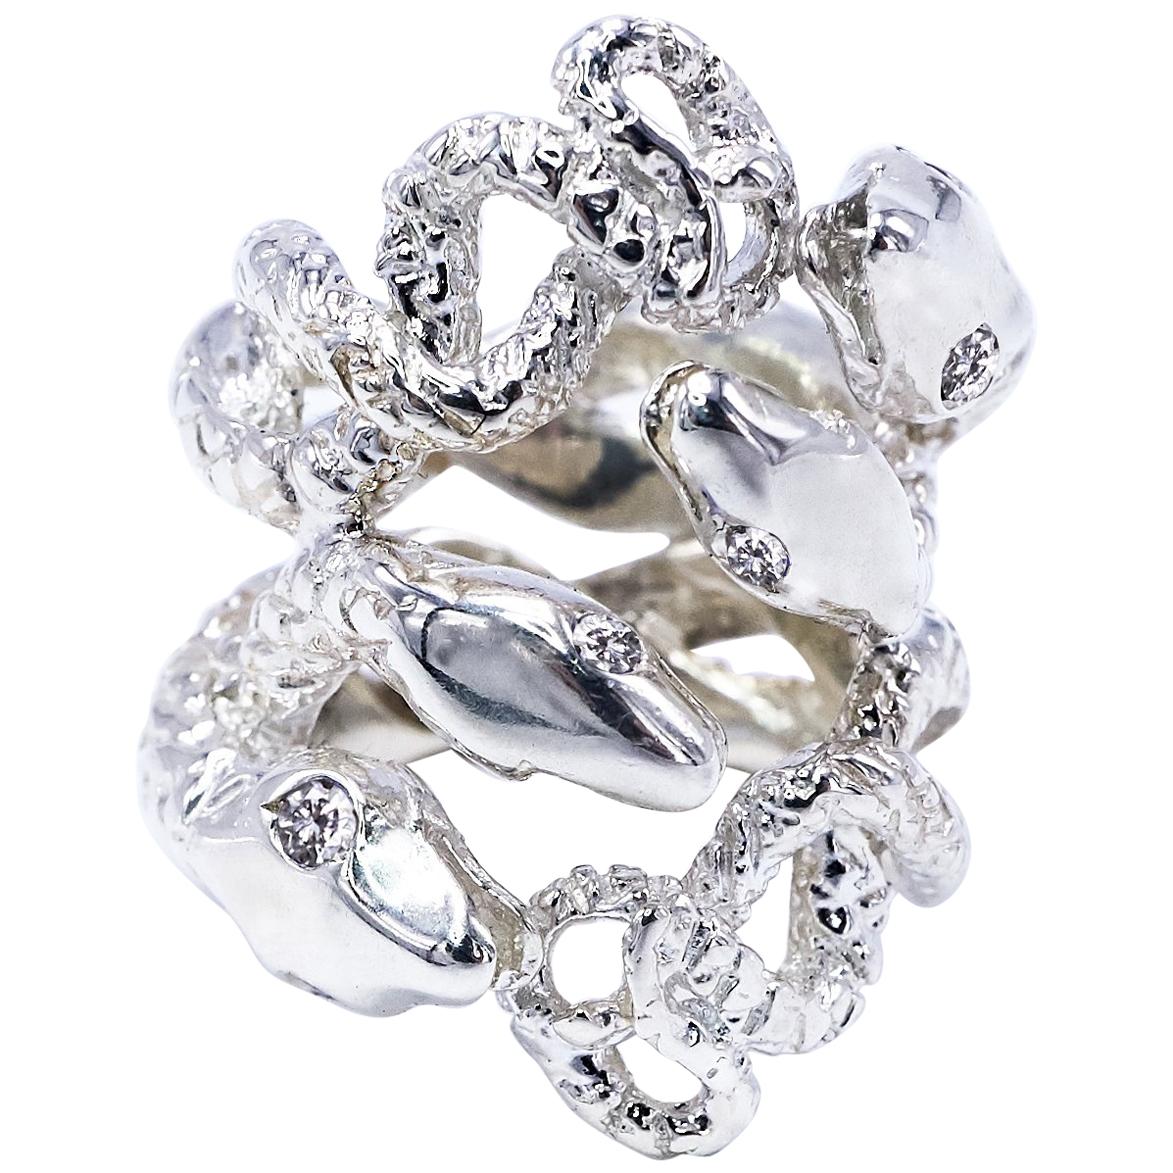 Weißer Diamant Schlangenring Gold Cocktail Ring Verstellbar J Dauphin

J DAUPHIN 